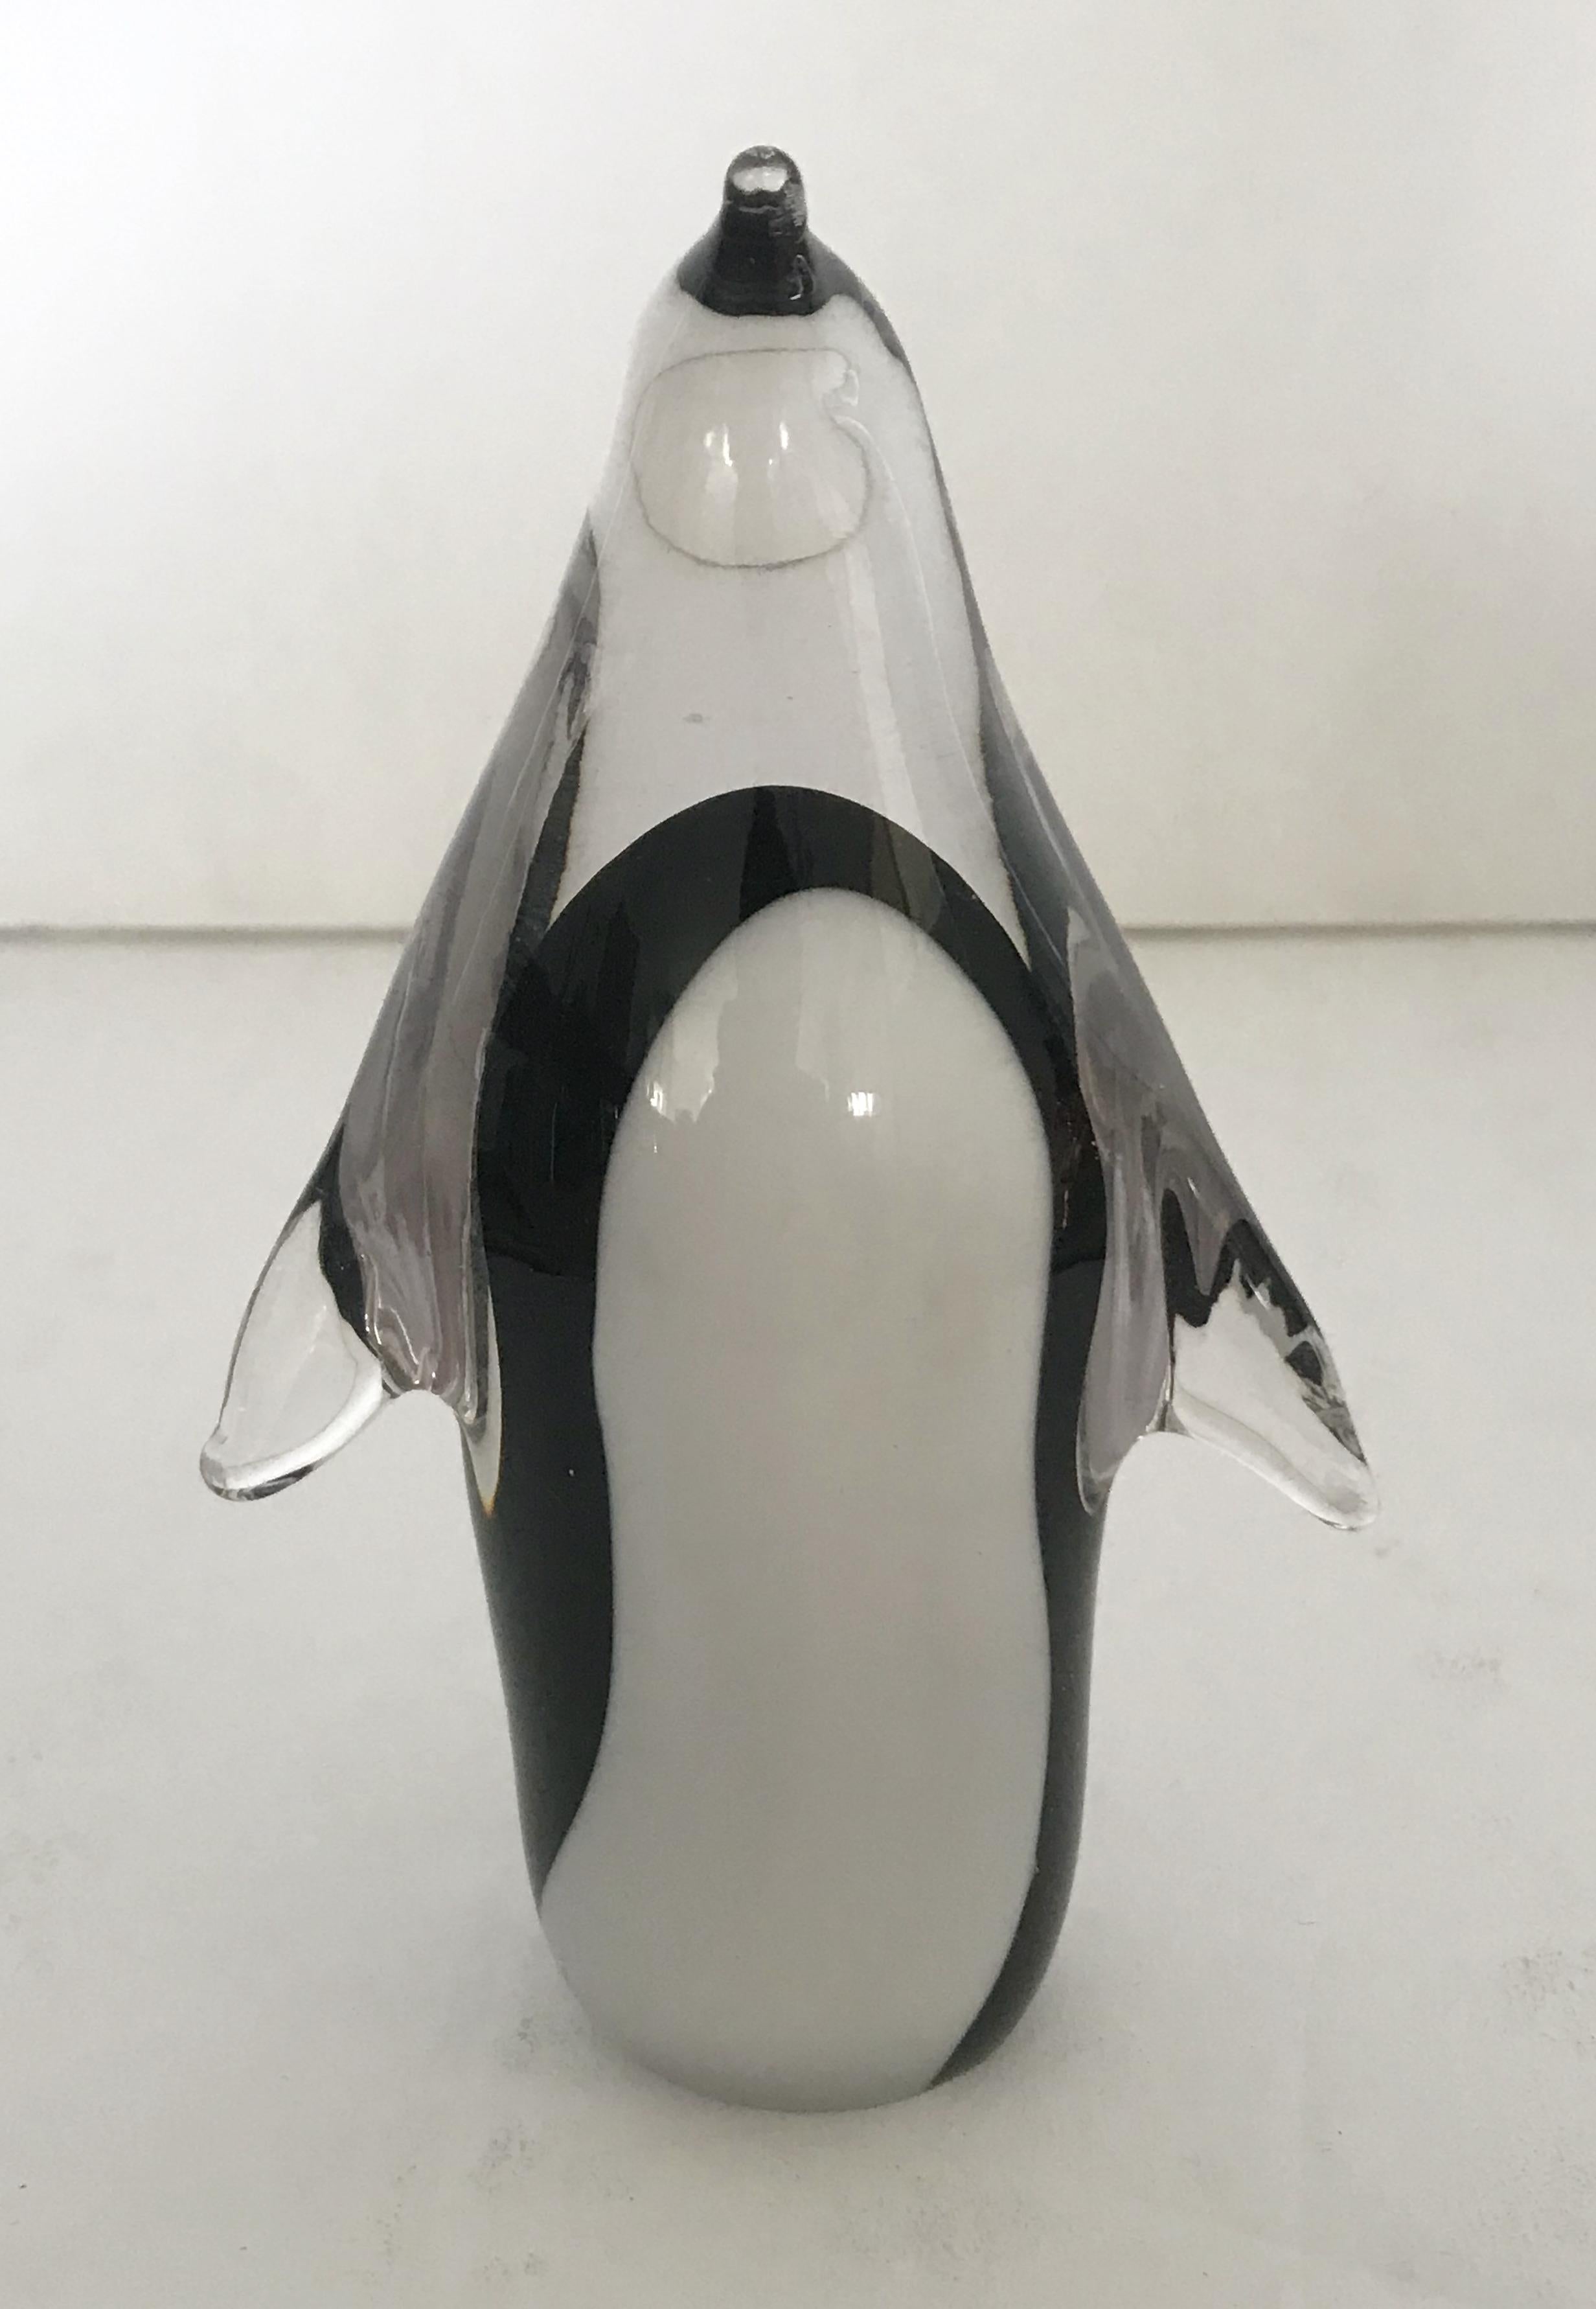 Pinguin-Skulptur aus mundgeblasenem Muranoglas in klaren, schwarzen und weißen Farben / Made in Italy, ca. 1970er Jahre
Maße: Höhe 5 Zoll, Breite 3 Zoll, Tiefe 2 Zoll
1 auf Lager in Palm Springs ON 50% OFF SALE für $299 !!
Bestellnummer: FABIOLTD